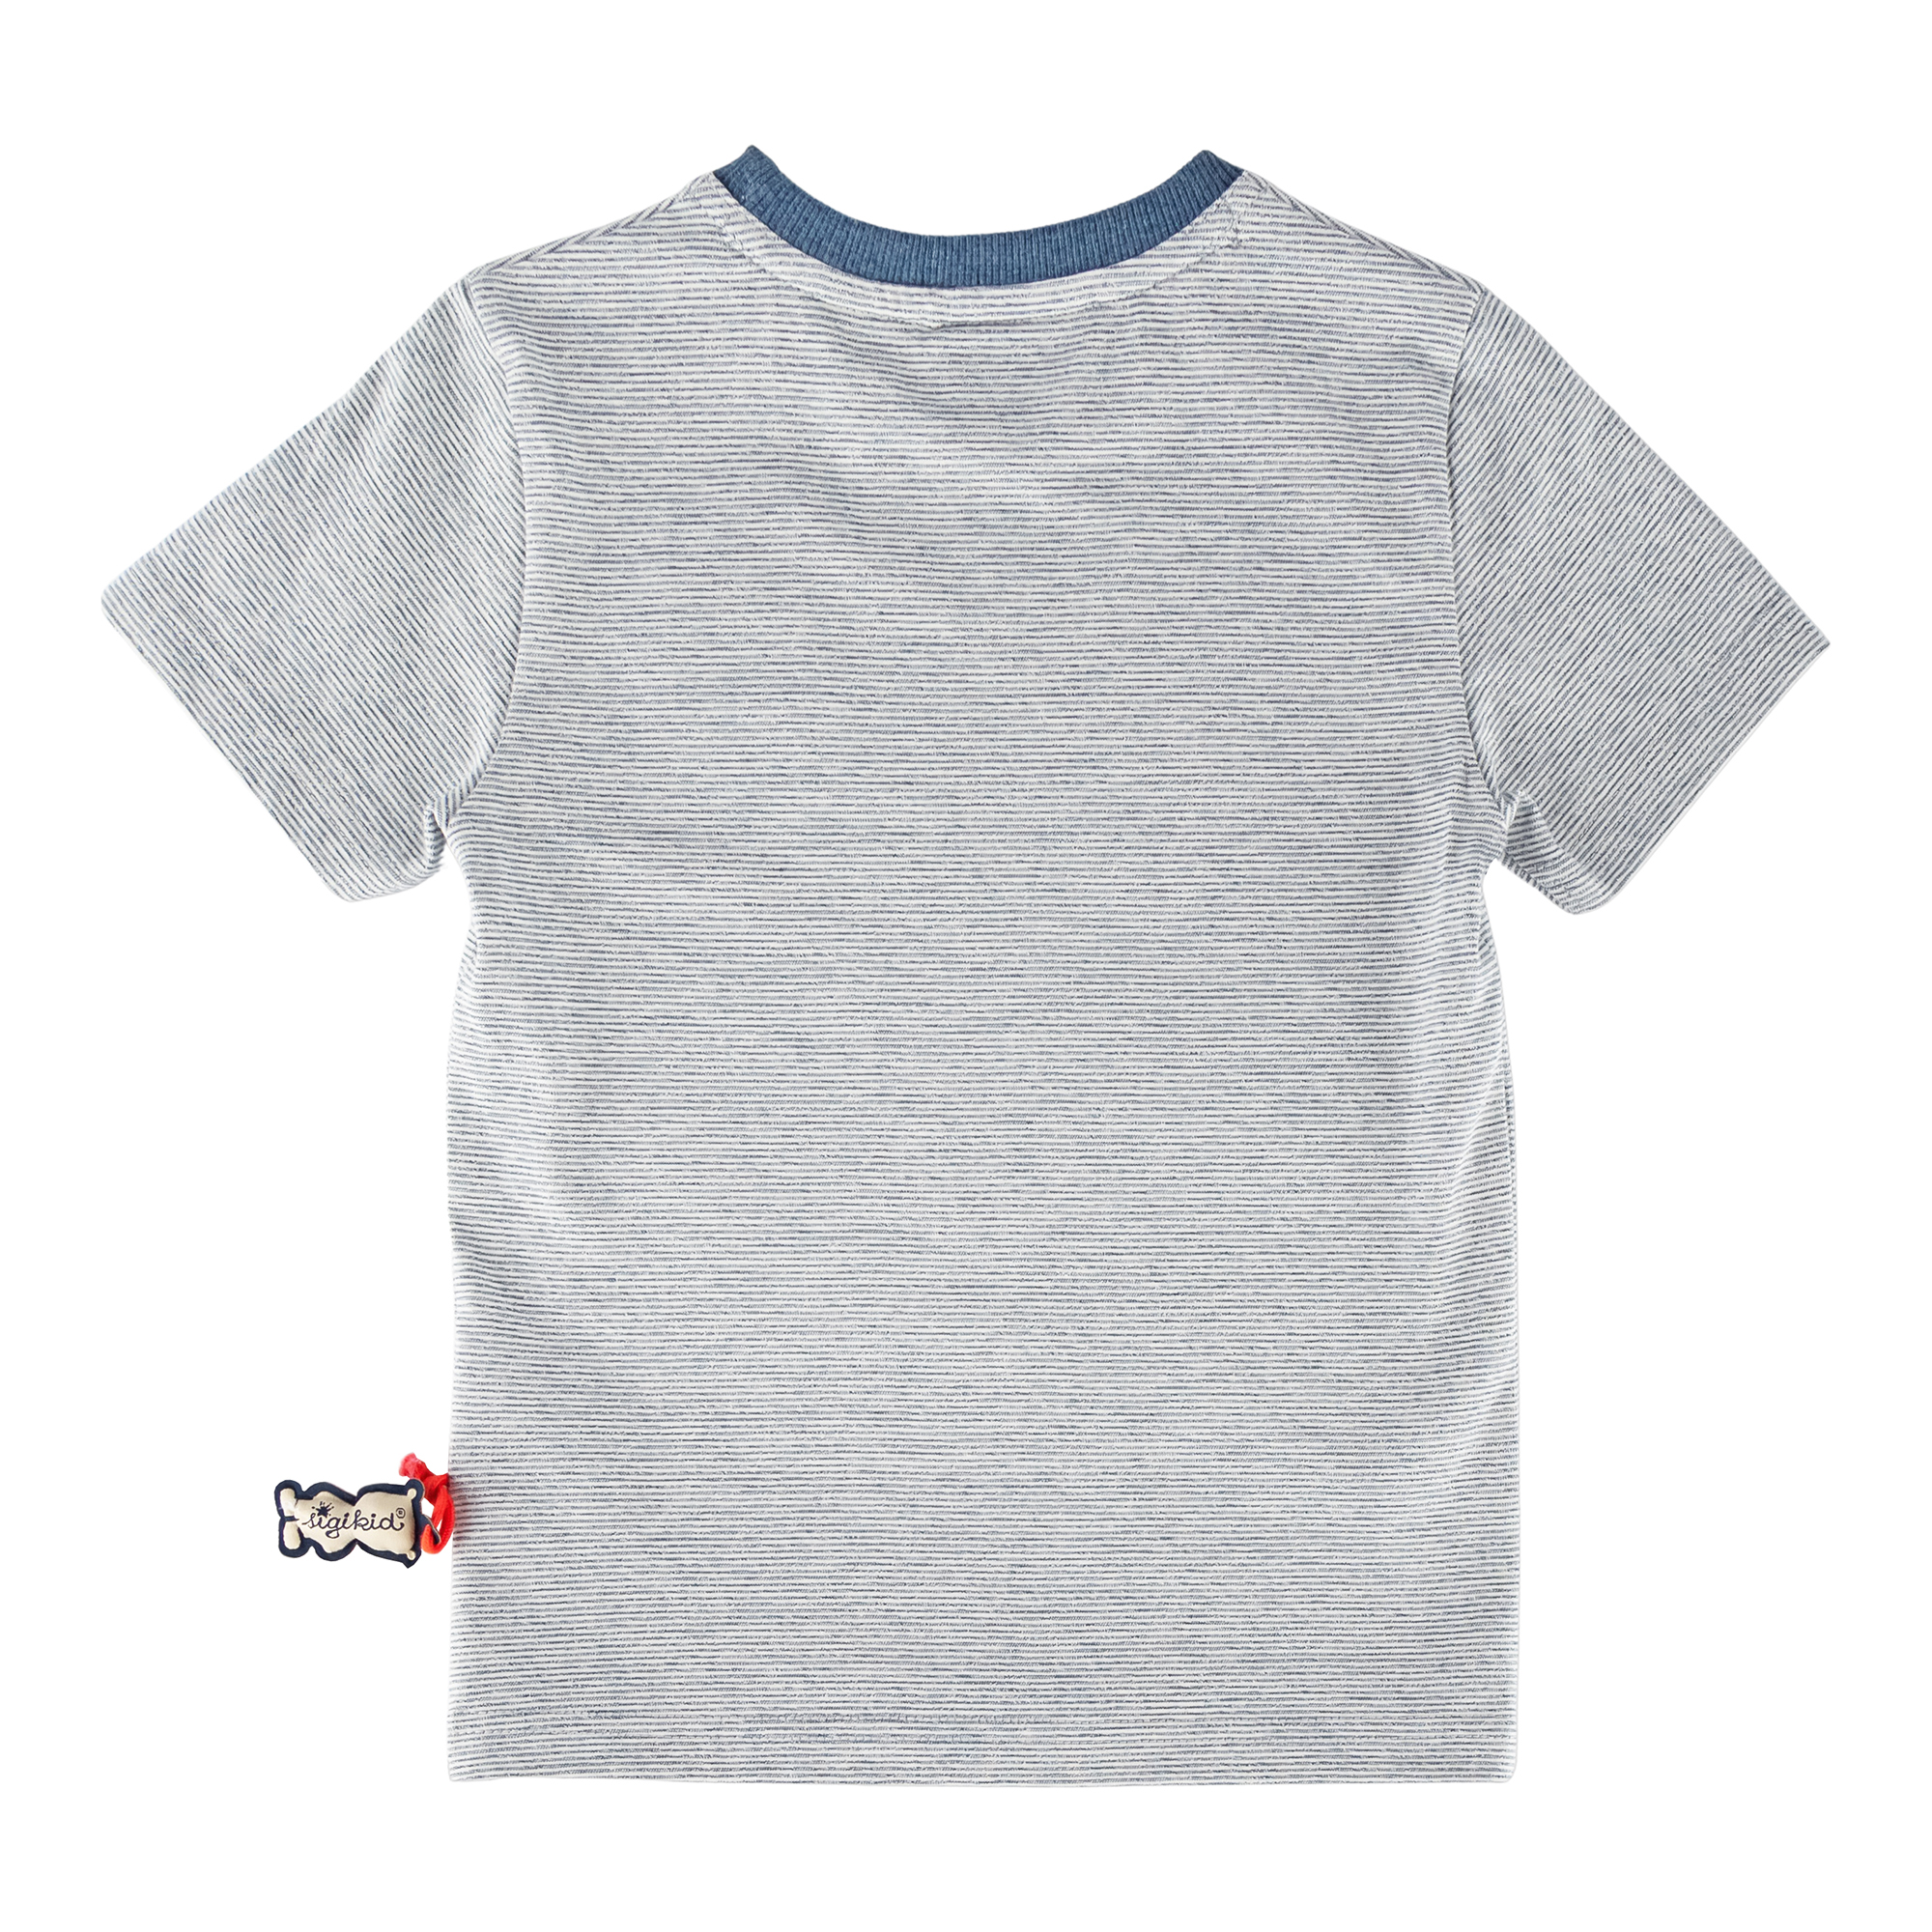 Kinder T-Shirt mit Boot-Patch, blau-weiß meliert